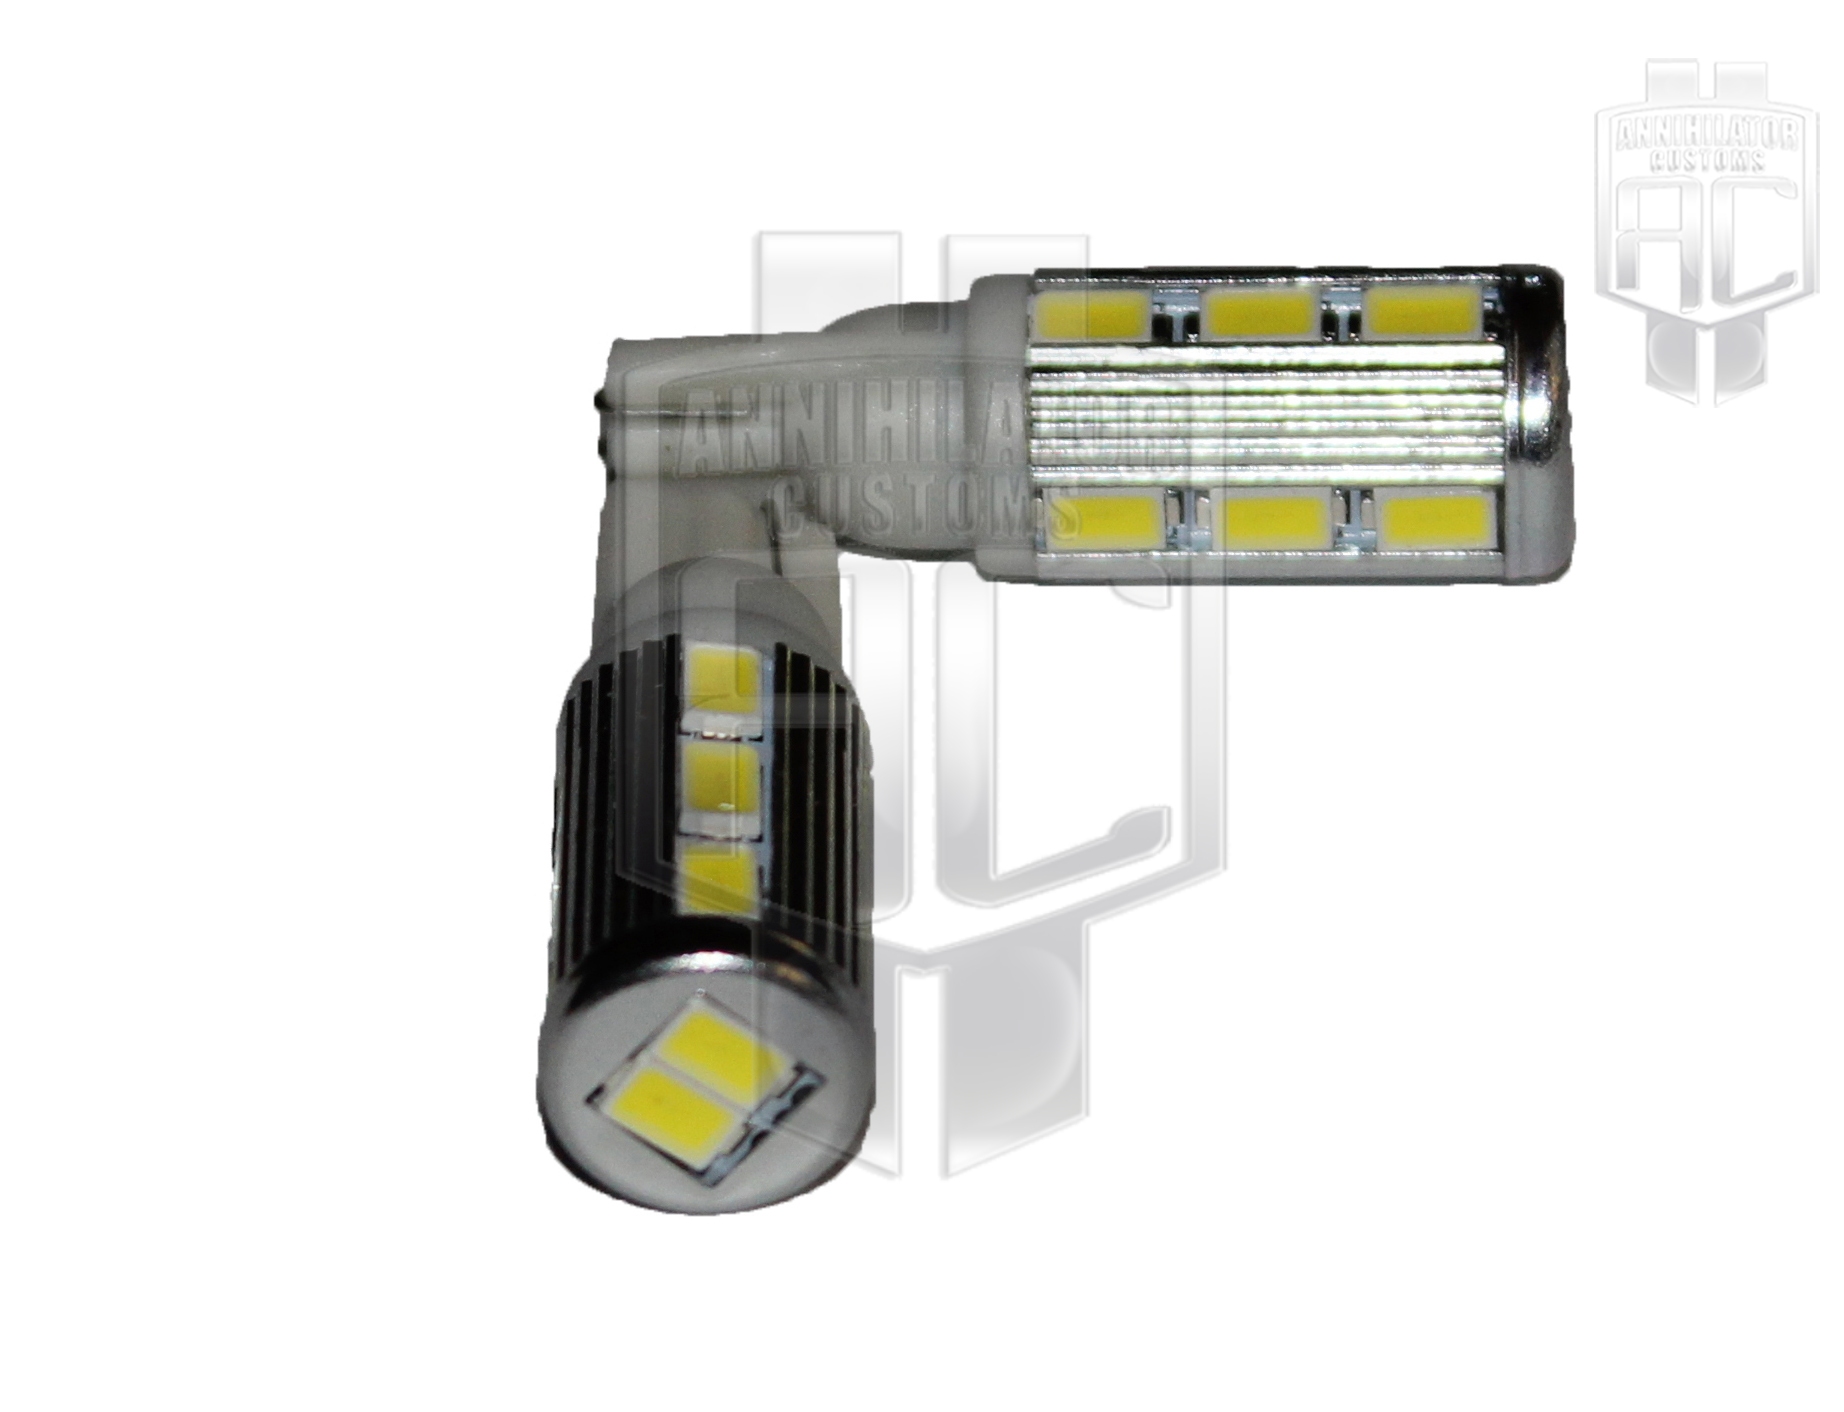 T10/W5W/194 14pc 5630 SMD LED Light Bulbs